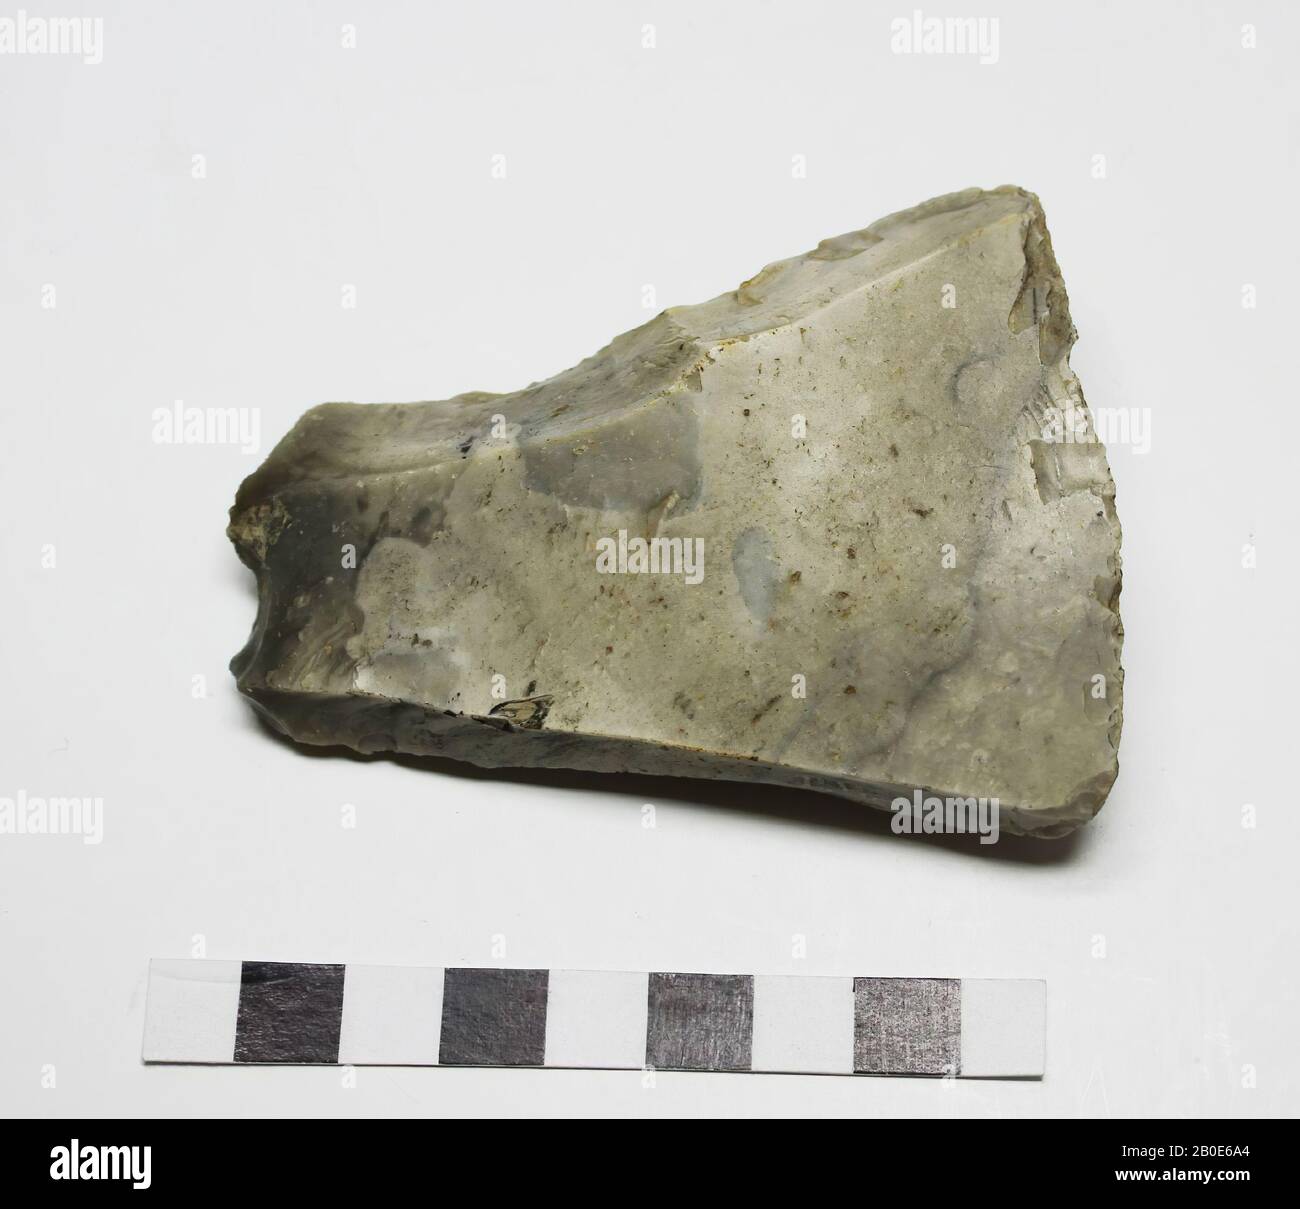 AX, pietra, selce, 8,4 x 6,0 x 2,2 cm, preistoria, Danimarca, Sjaeland, sconosciuto, sconosciuto Foto Stock